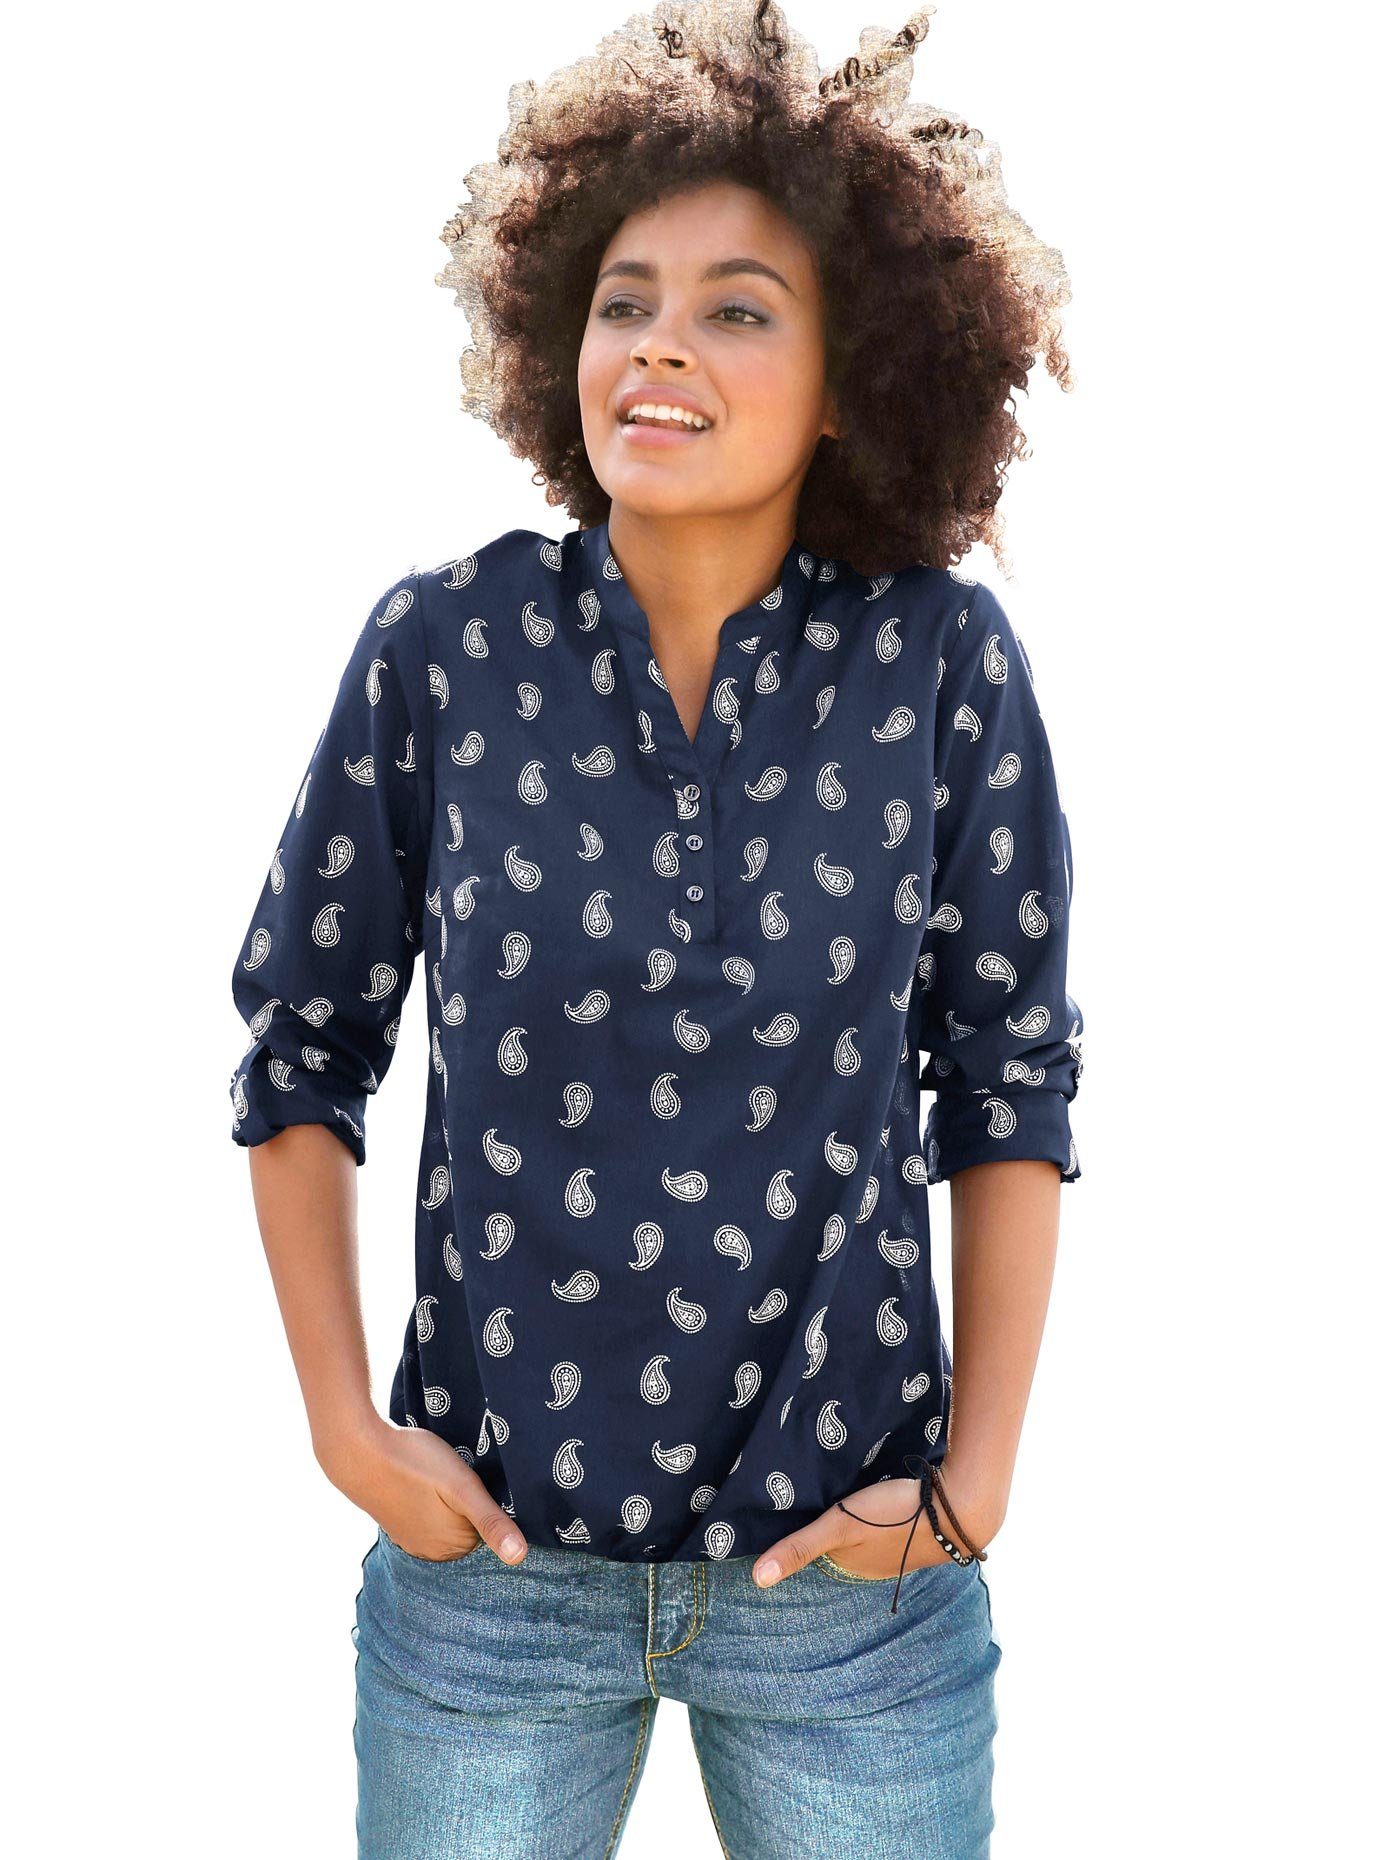 Blusen Große Größe für Damen online kaufen | OTTO